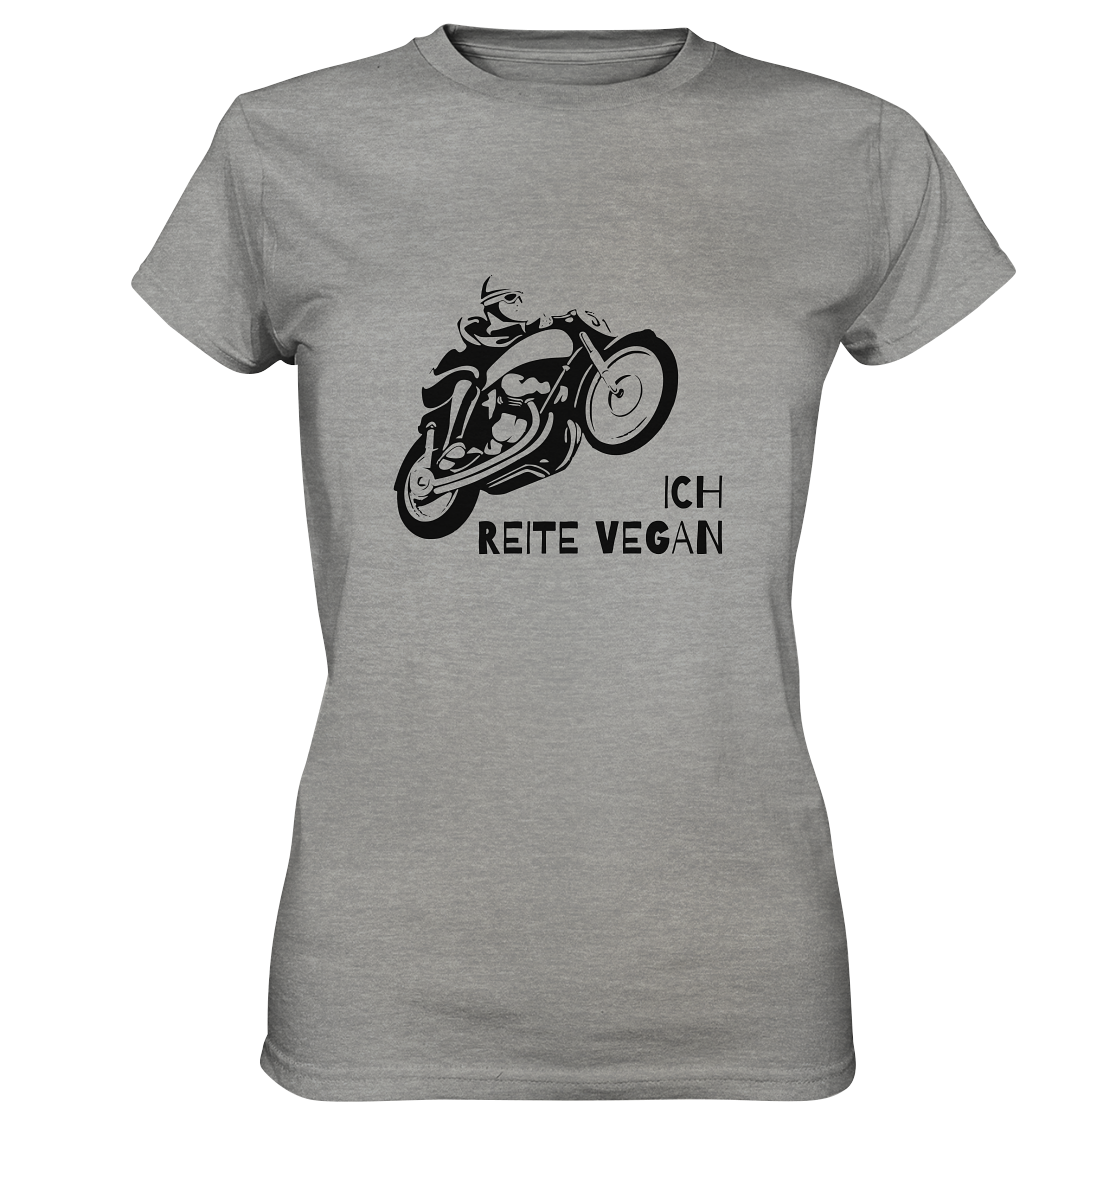 T-Shirt, Damen Rundhals, mit Aufdruck Motorrad und Spruch "Ich reite vegan", grau hell meliert